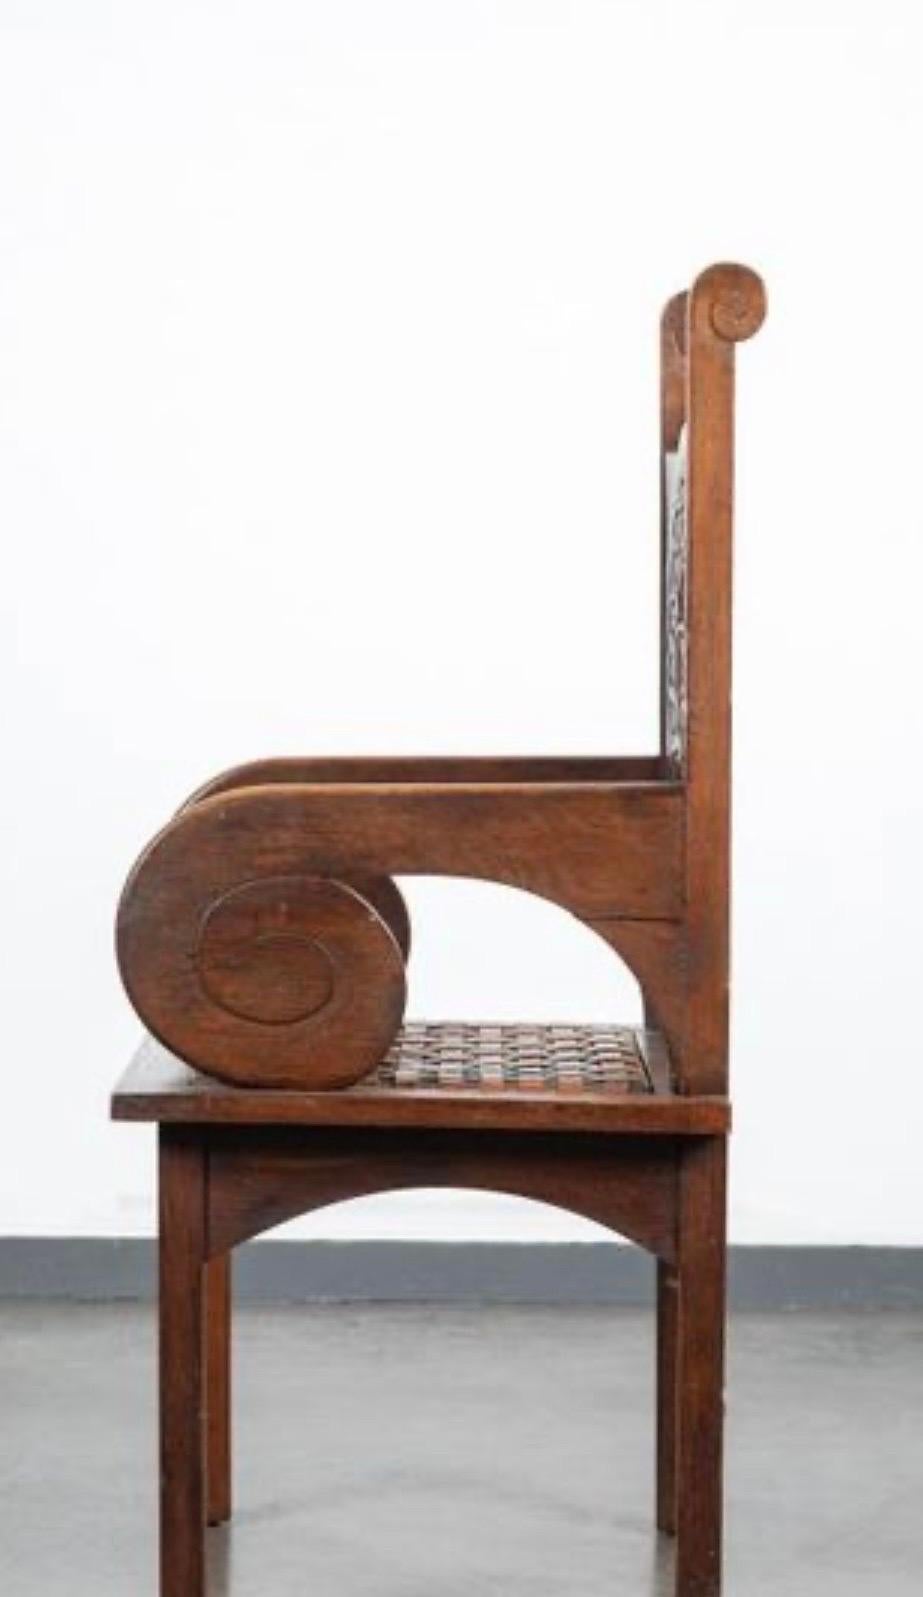 Fauteuil en chêne sculpté de JACQUES PHILLIPPE (1896-1959) avec bandeau de cuir sur l'assise.
Jacques Philippe est un Guinpampaise  sculpteur et ébéniste
Il est représenté au musée de Rennes